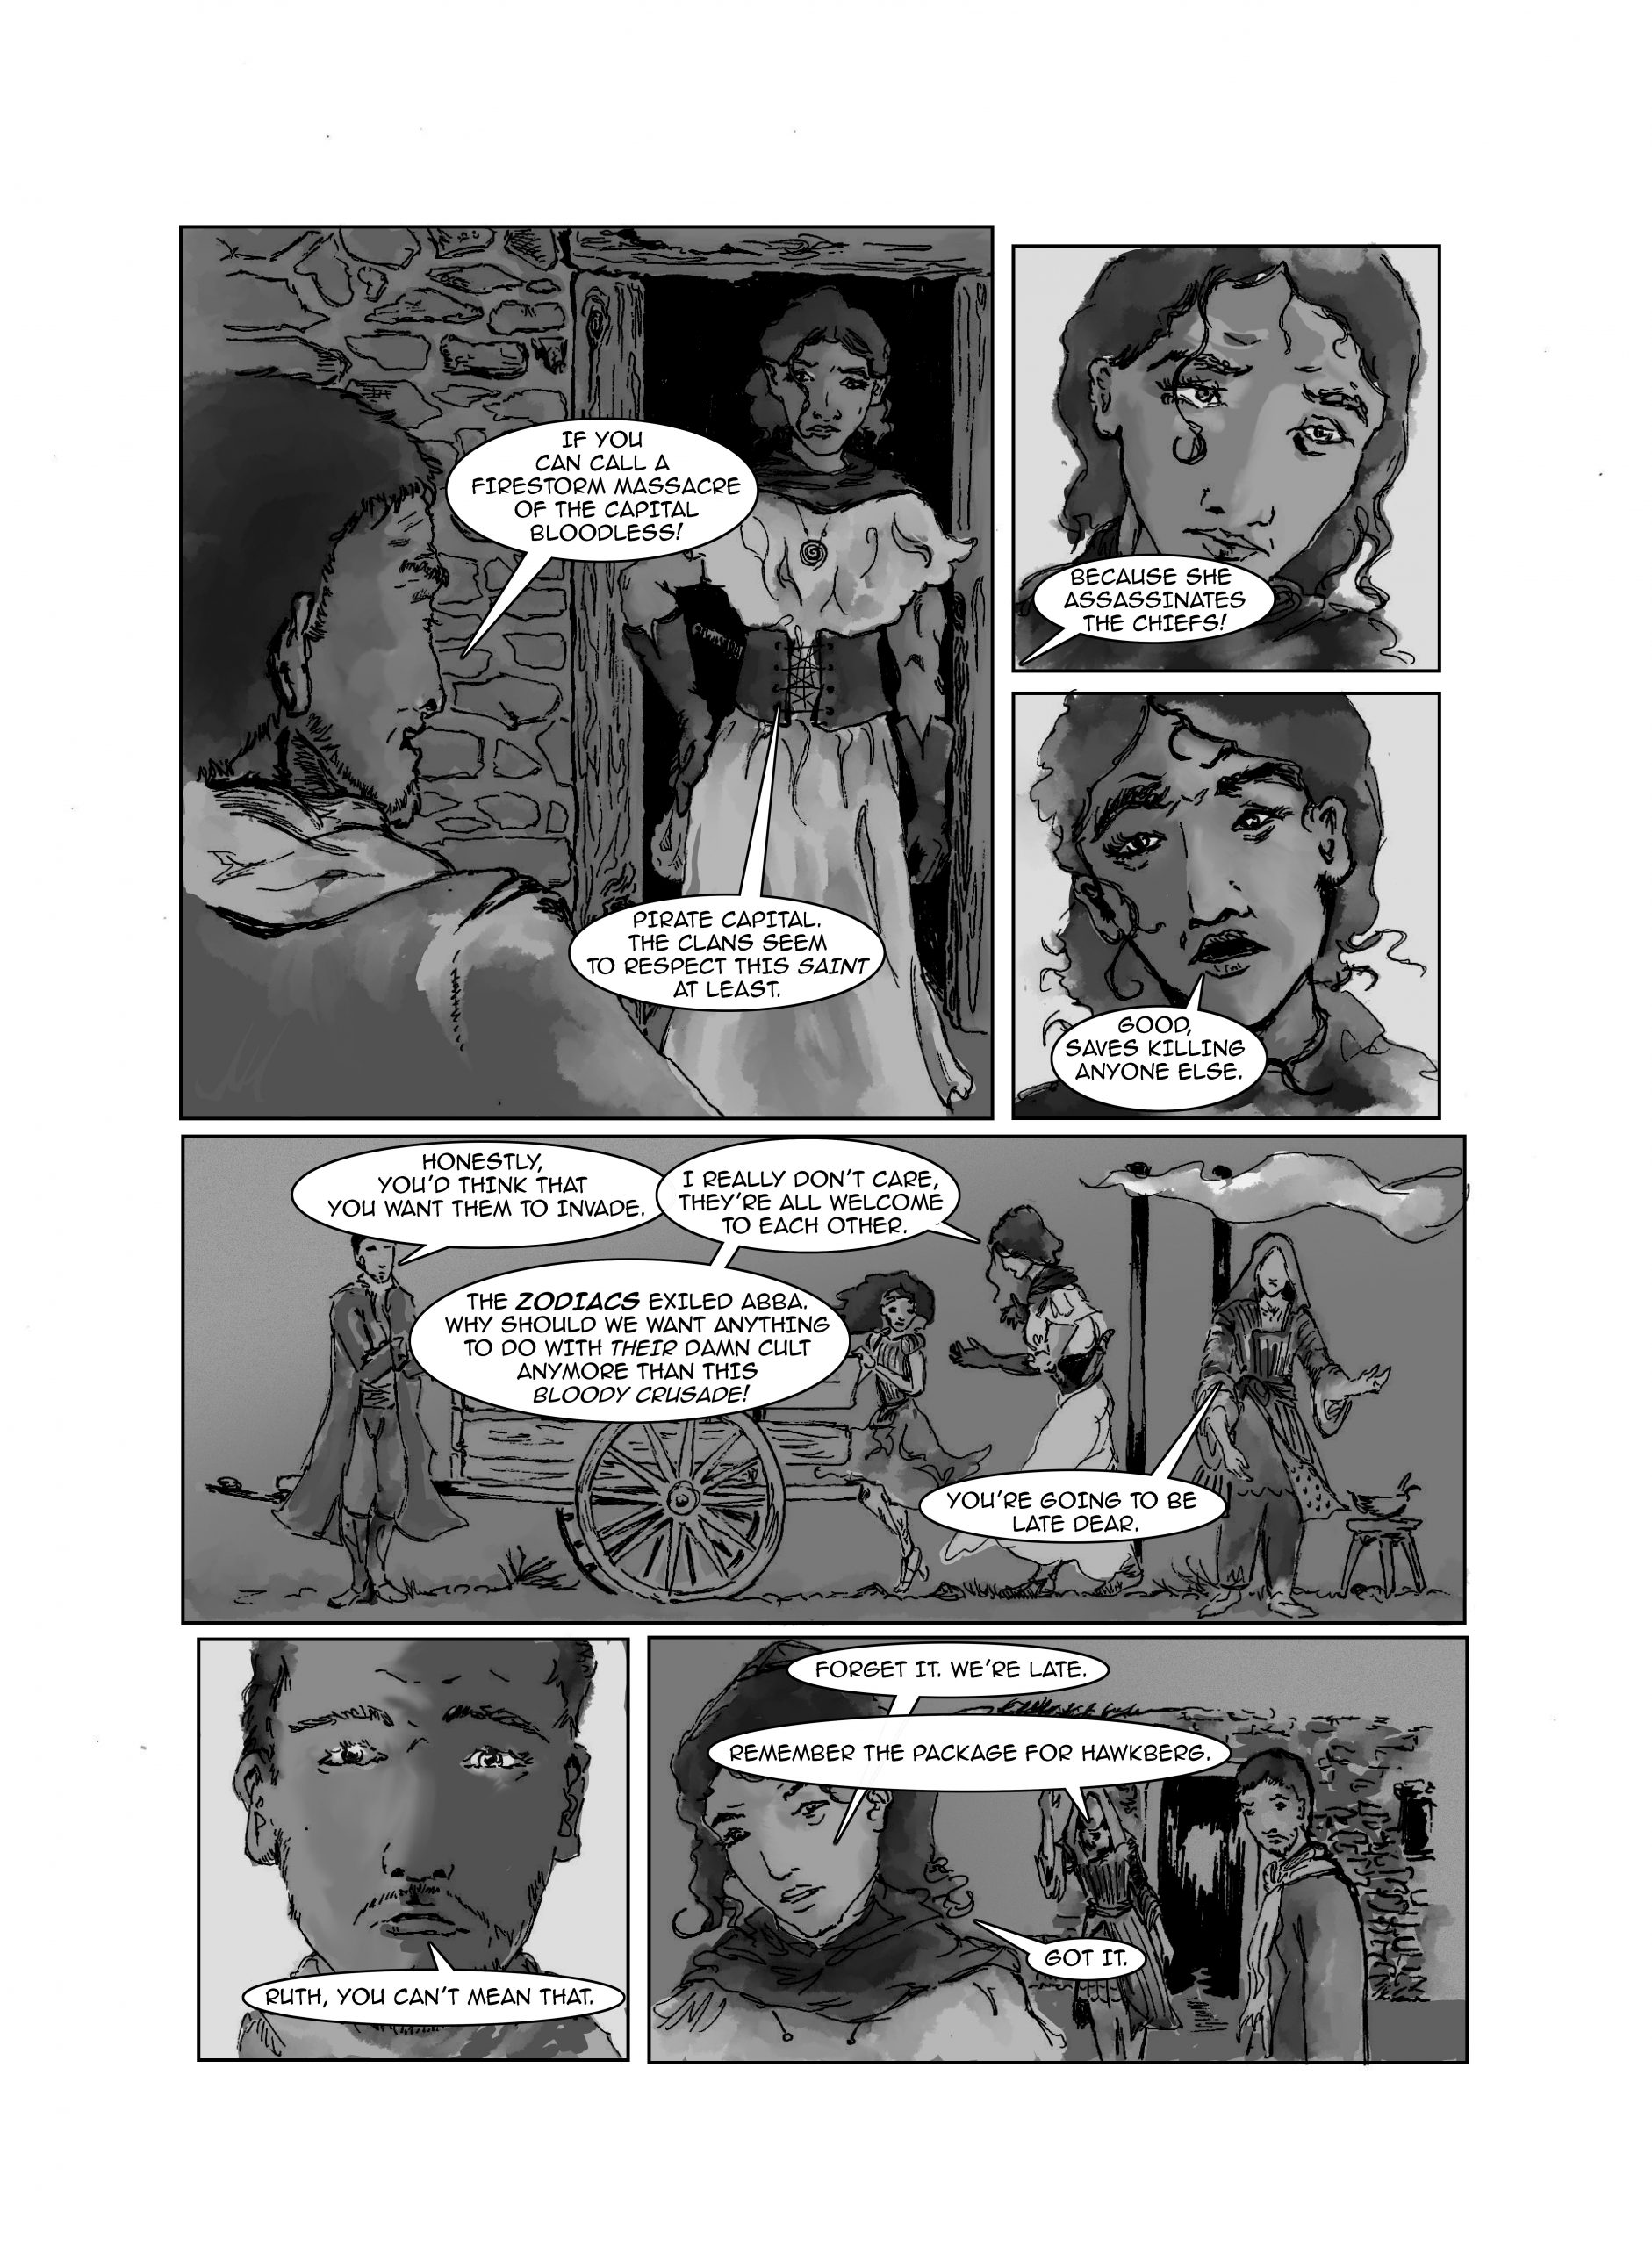 Page-9-9-BW